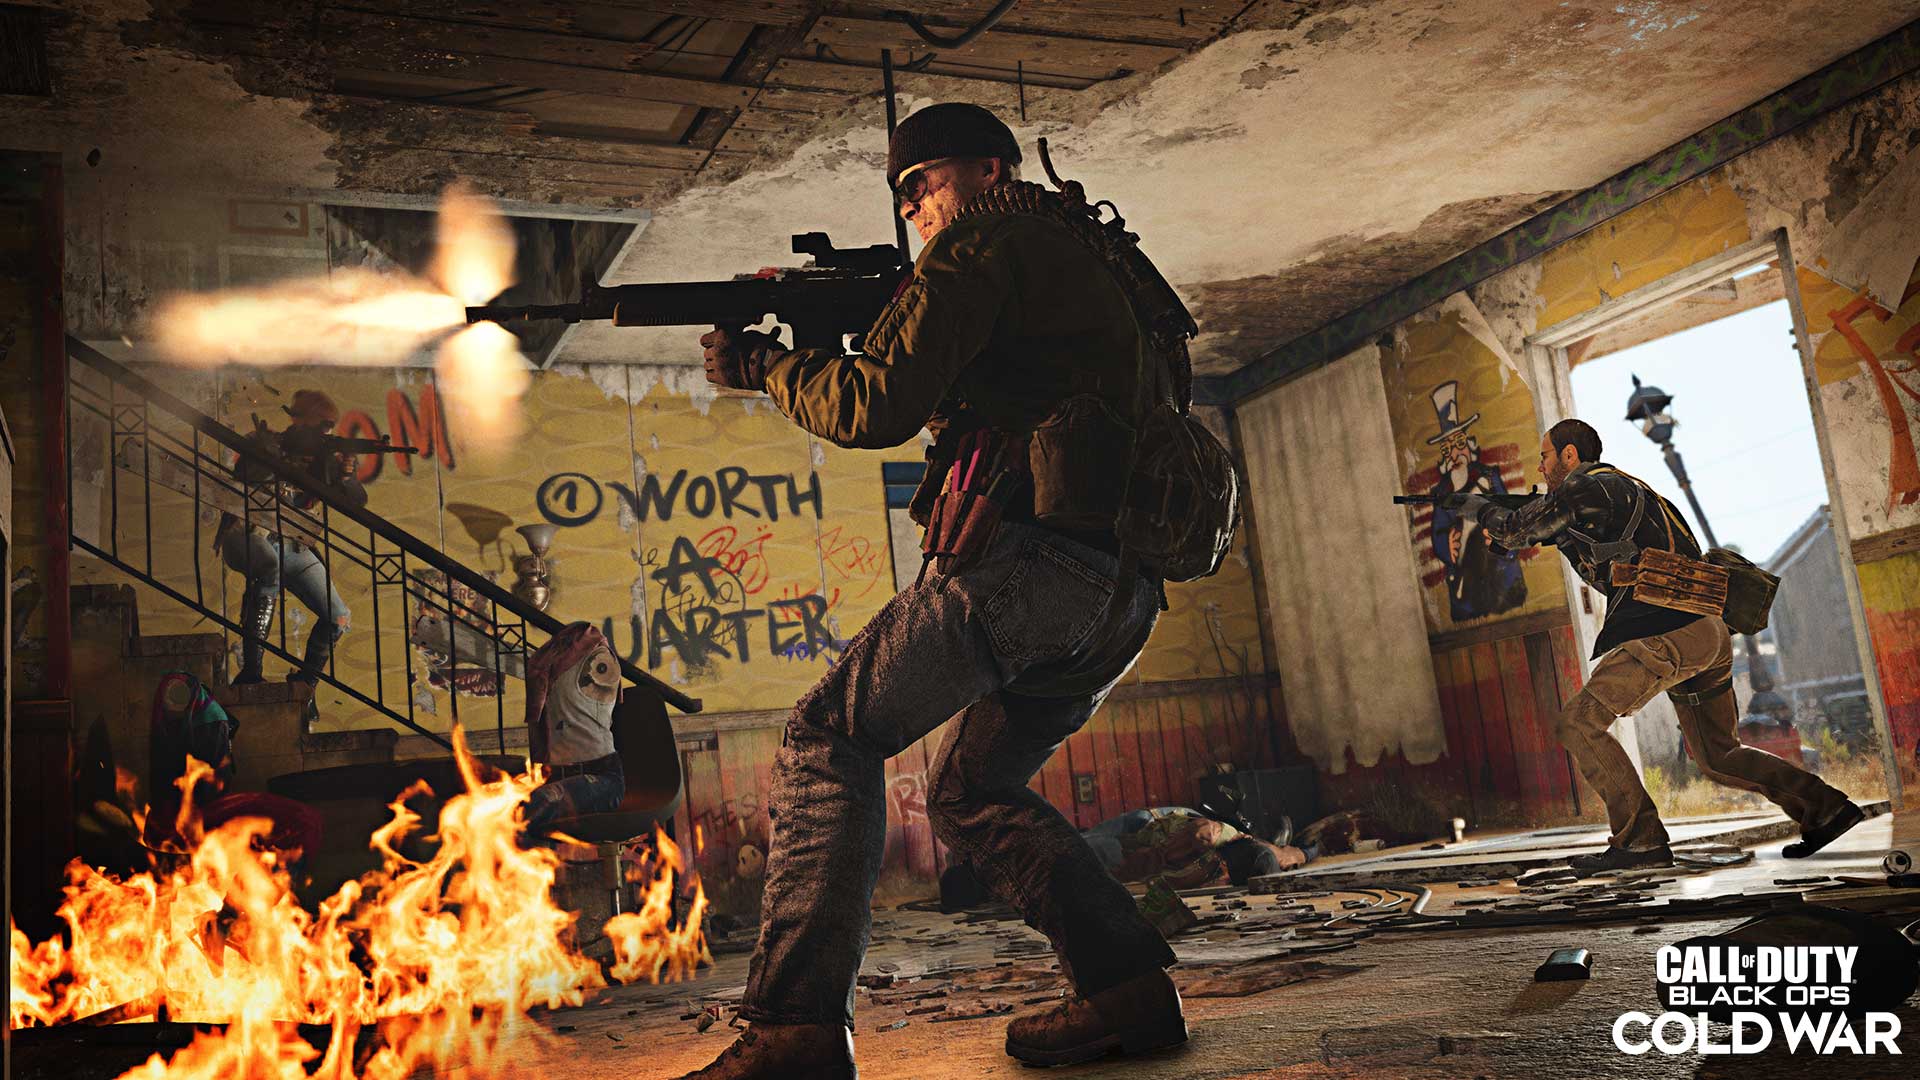 Pour sa saison 2, Call of Duty: Black Ops Cold War sera jouable gratuitement pendant une semaine